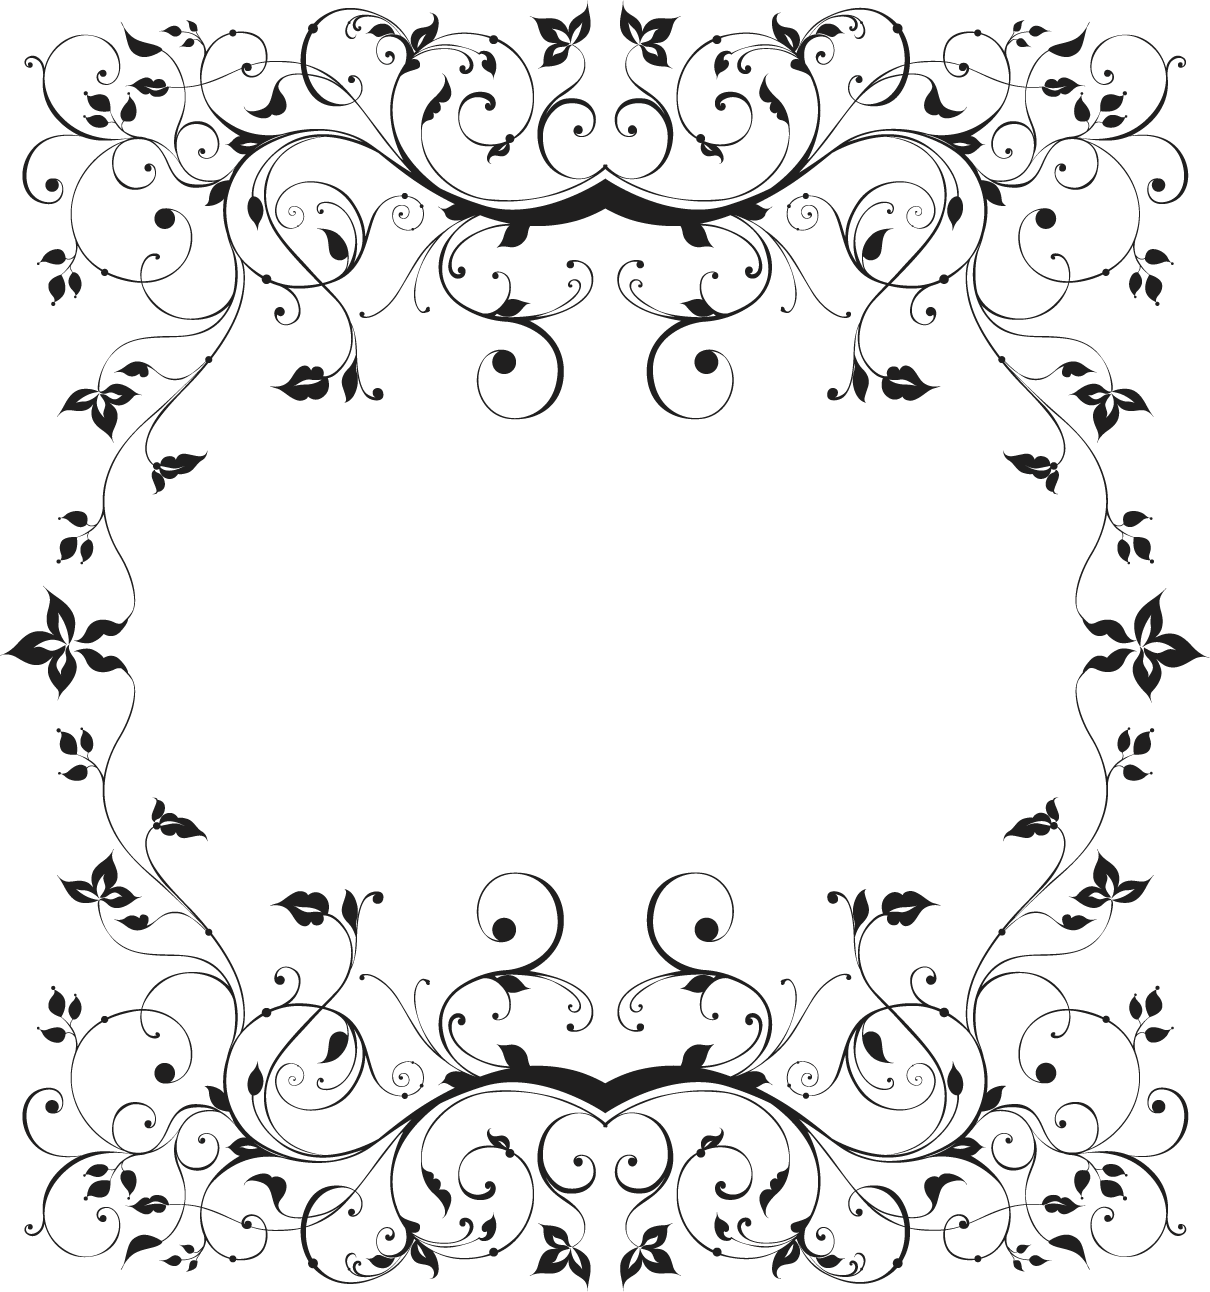 白黒 モノクロの花のイラスト フリー素材 フレーム枠no 791 白黒 茎葉 蔓